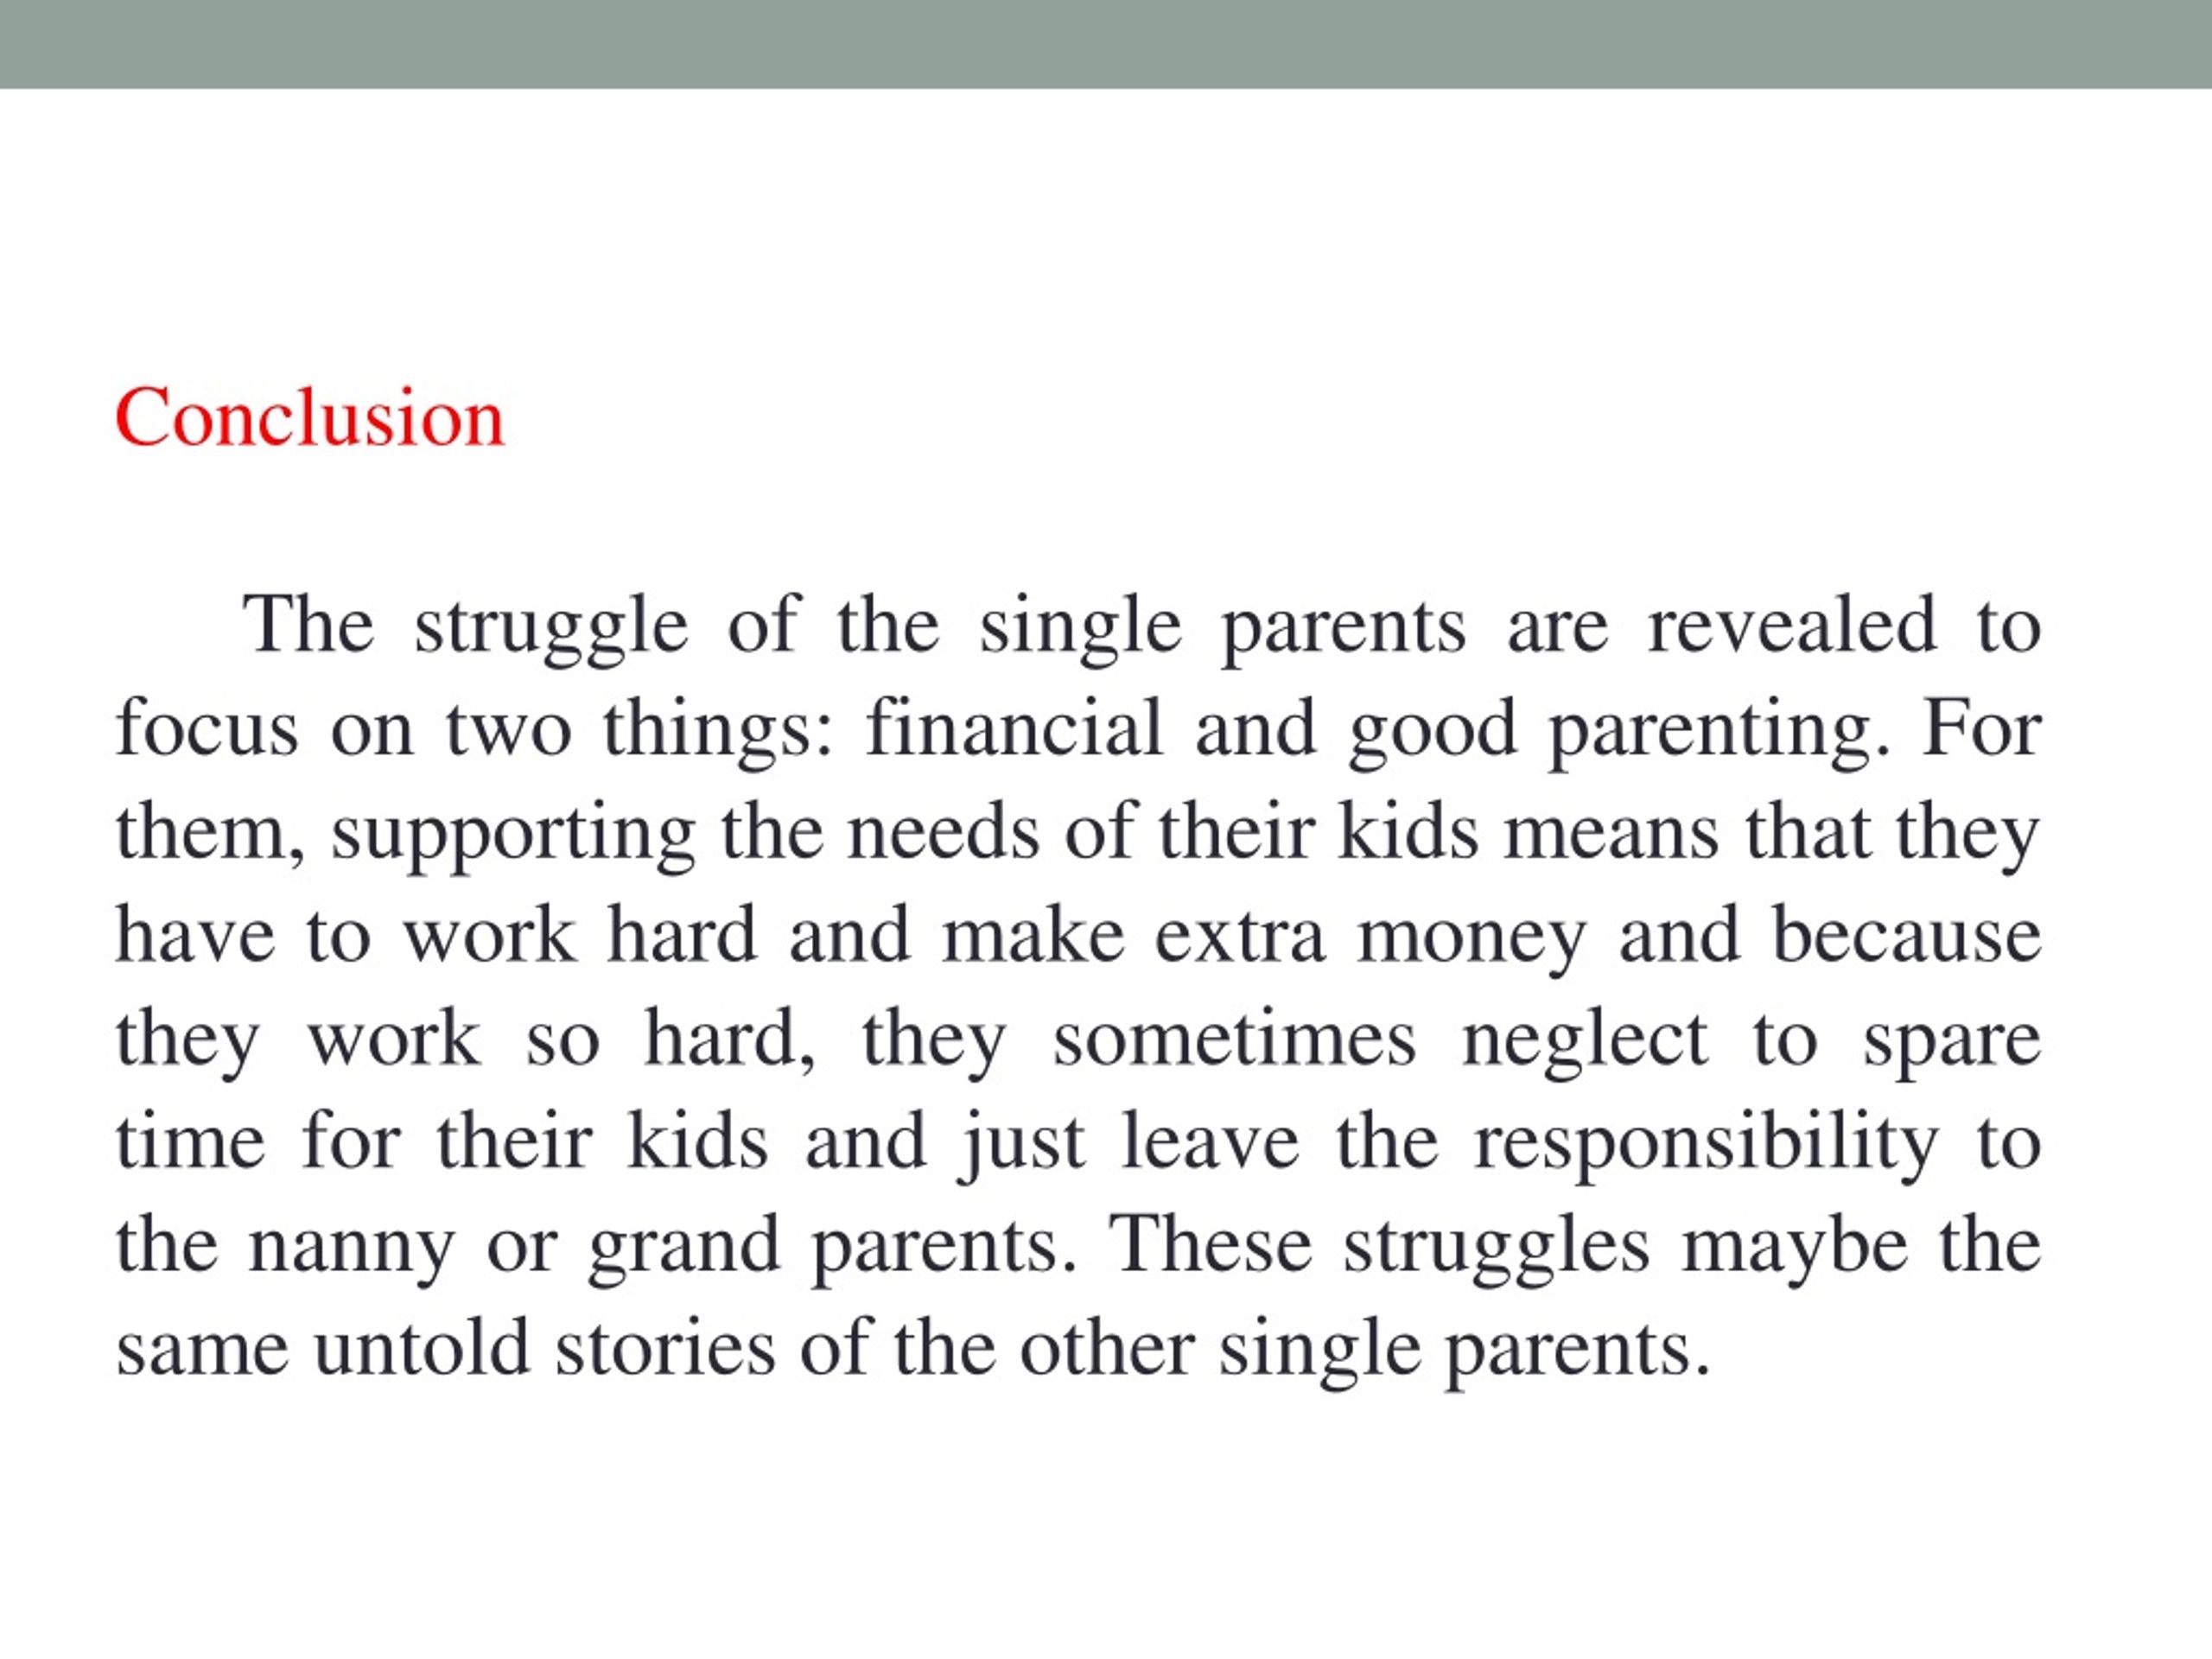 single parent struggle essay conclusion